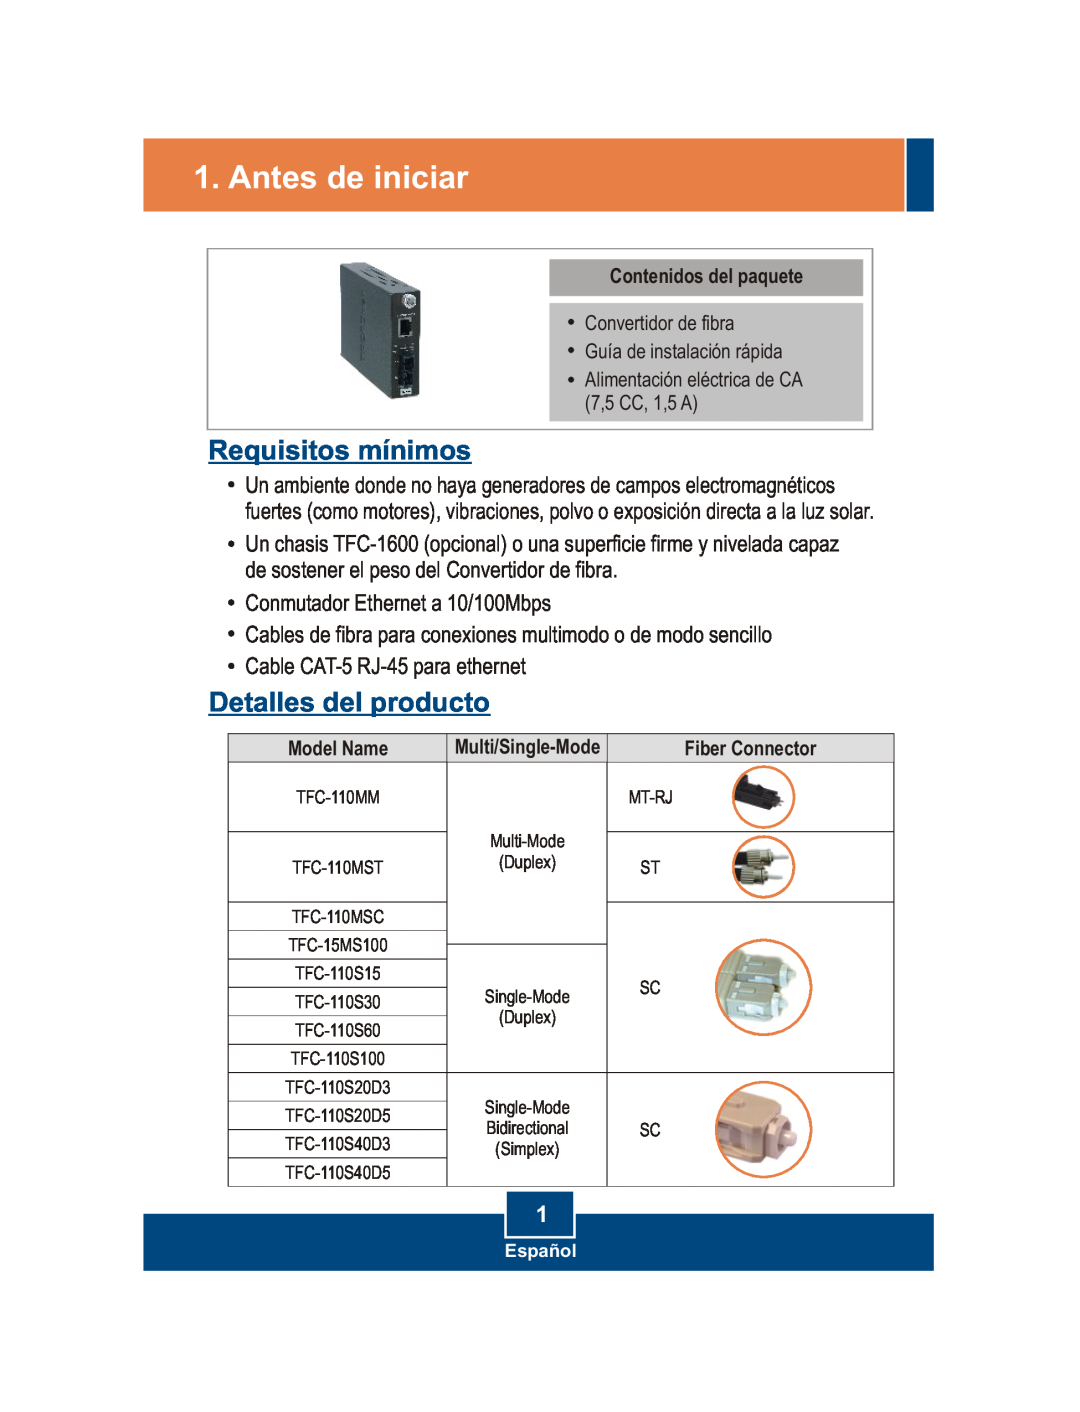 TRENDnet 100Base-FX manual Antes de iniciar, Requisitos mínimos, Detalles del producto 